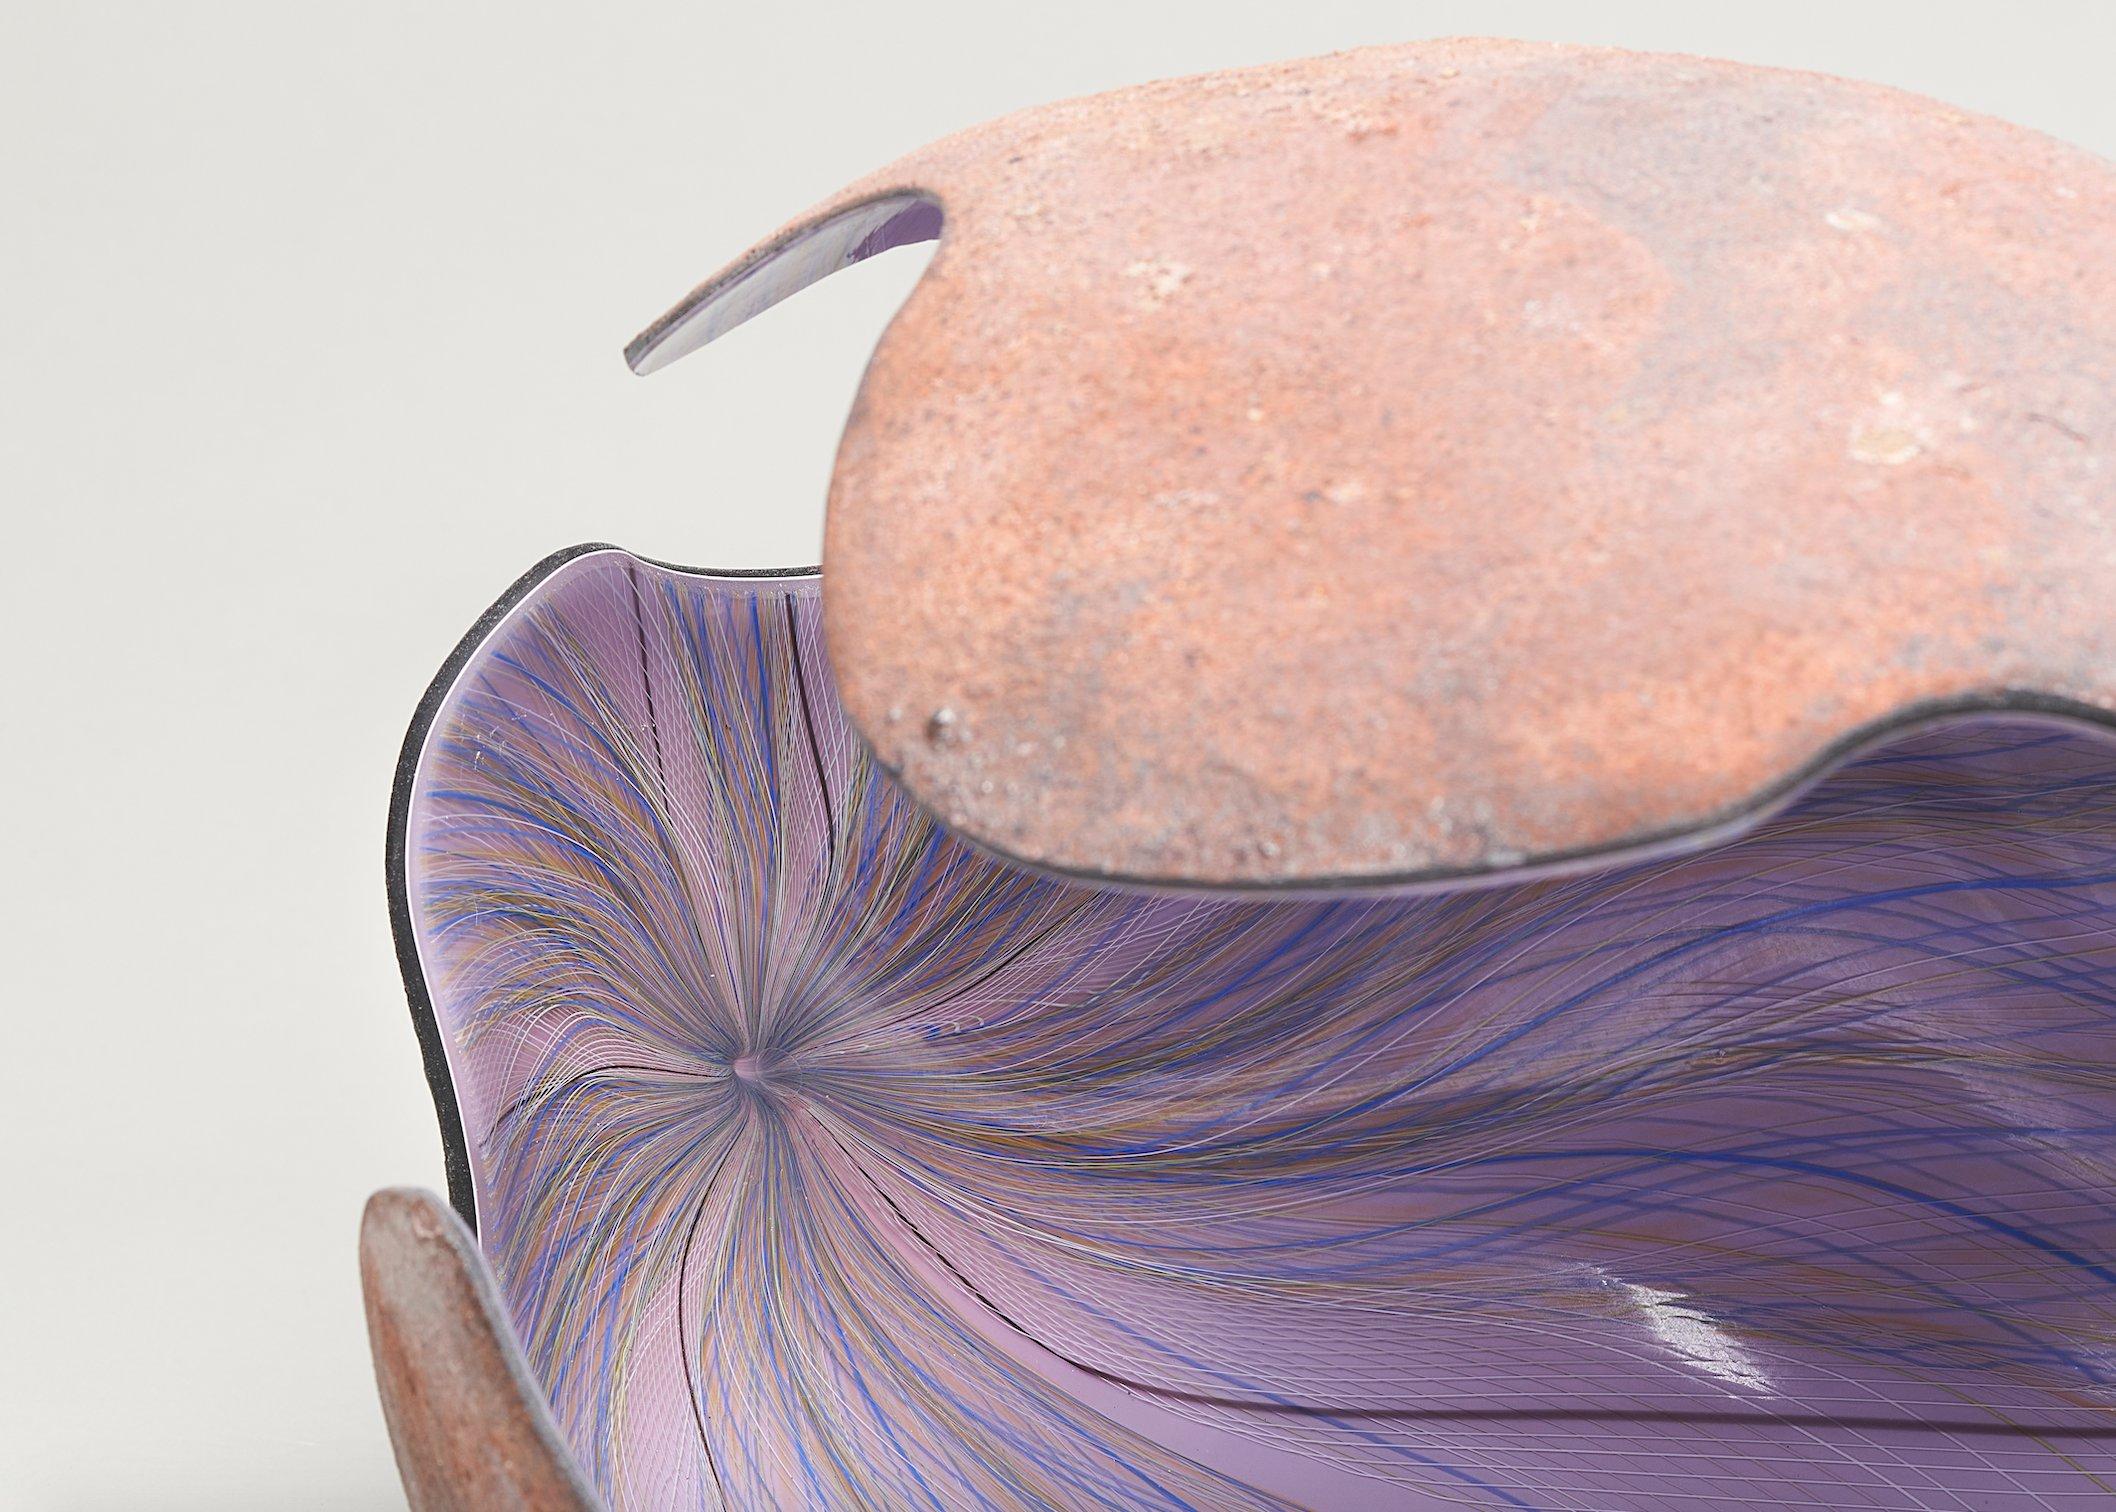 Wave Royal Purple, 2022 (Glas, C. 13 in. h x 18.5 in. b x 14.2 in. d, Objekt Nr.: 4000)

Geir Nustads Arbeit ist oft von seinen Erfahrungen inspiriert, die er als Kind in den kontrastreichen  die natürliche Umgebung Norwegens. Zwischen den